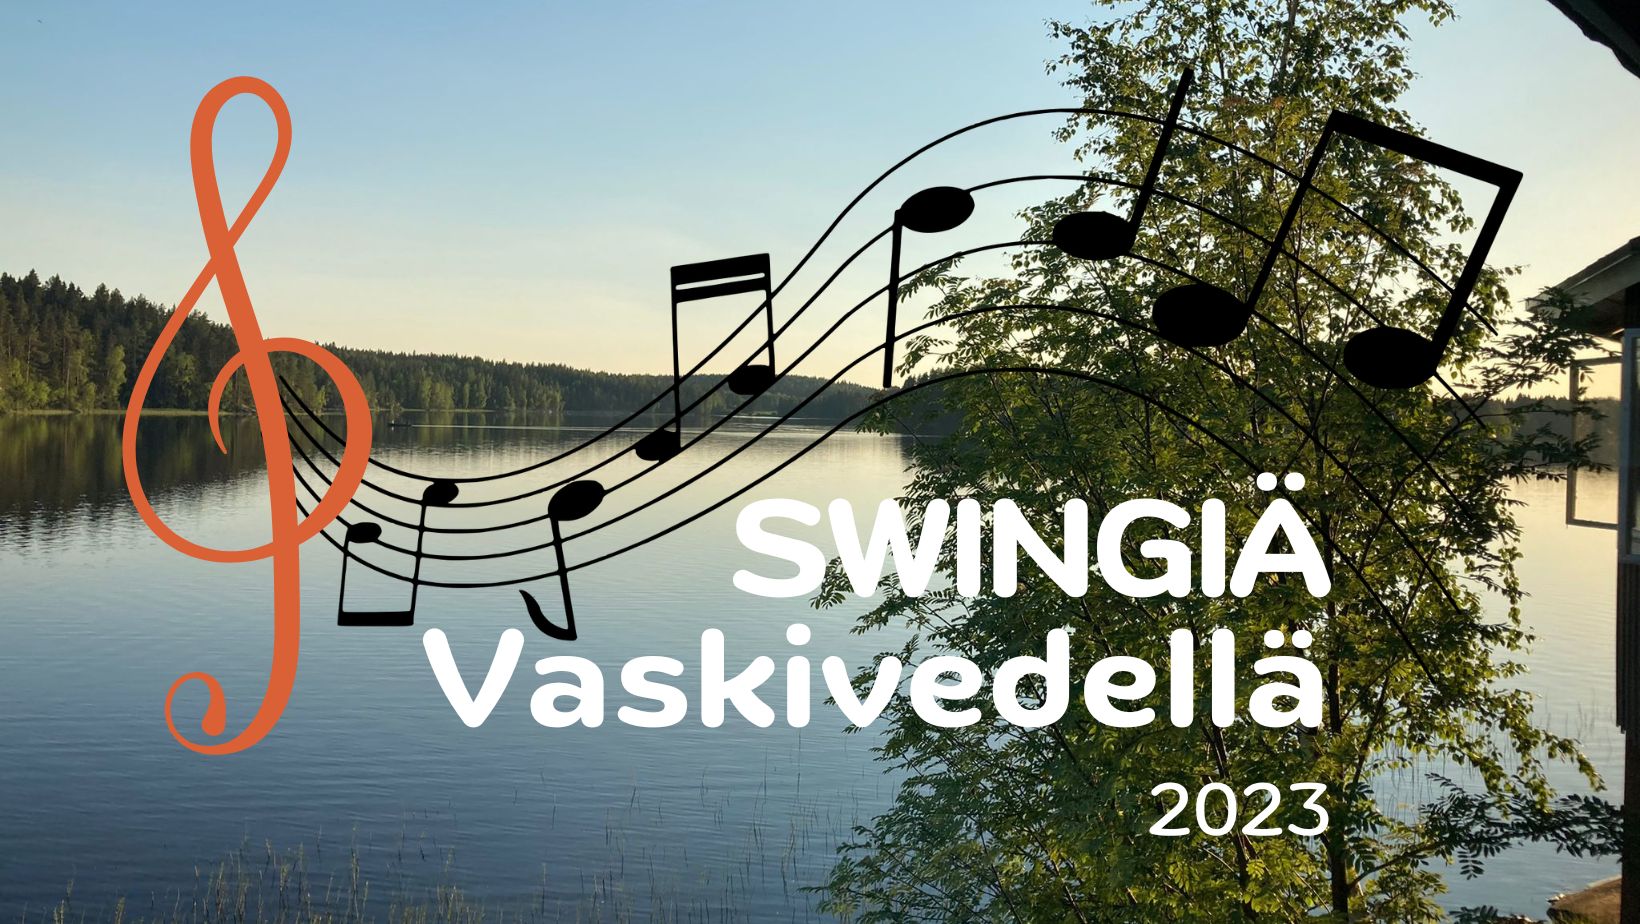 Swingiä Vaskivedellä siirtyy vuoteen 2023